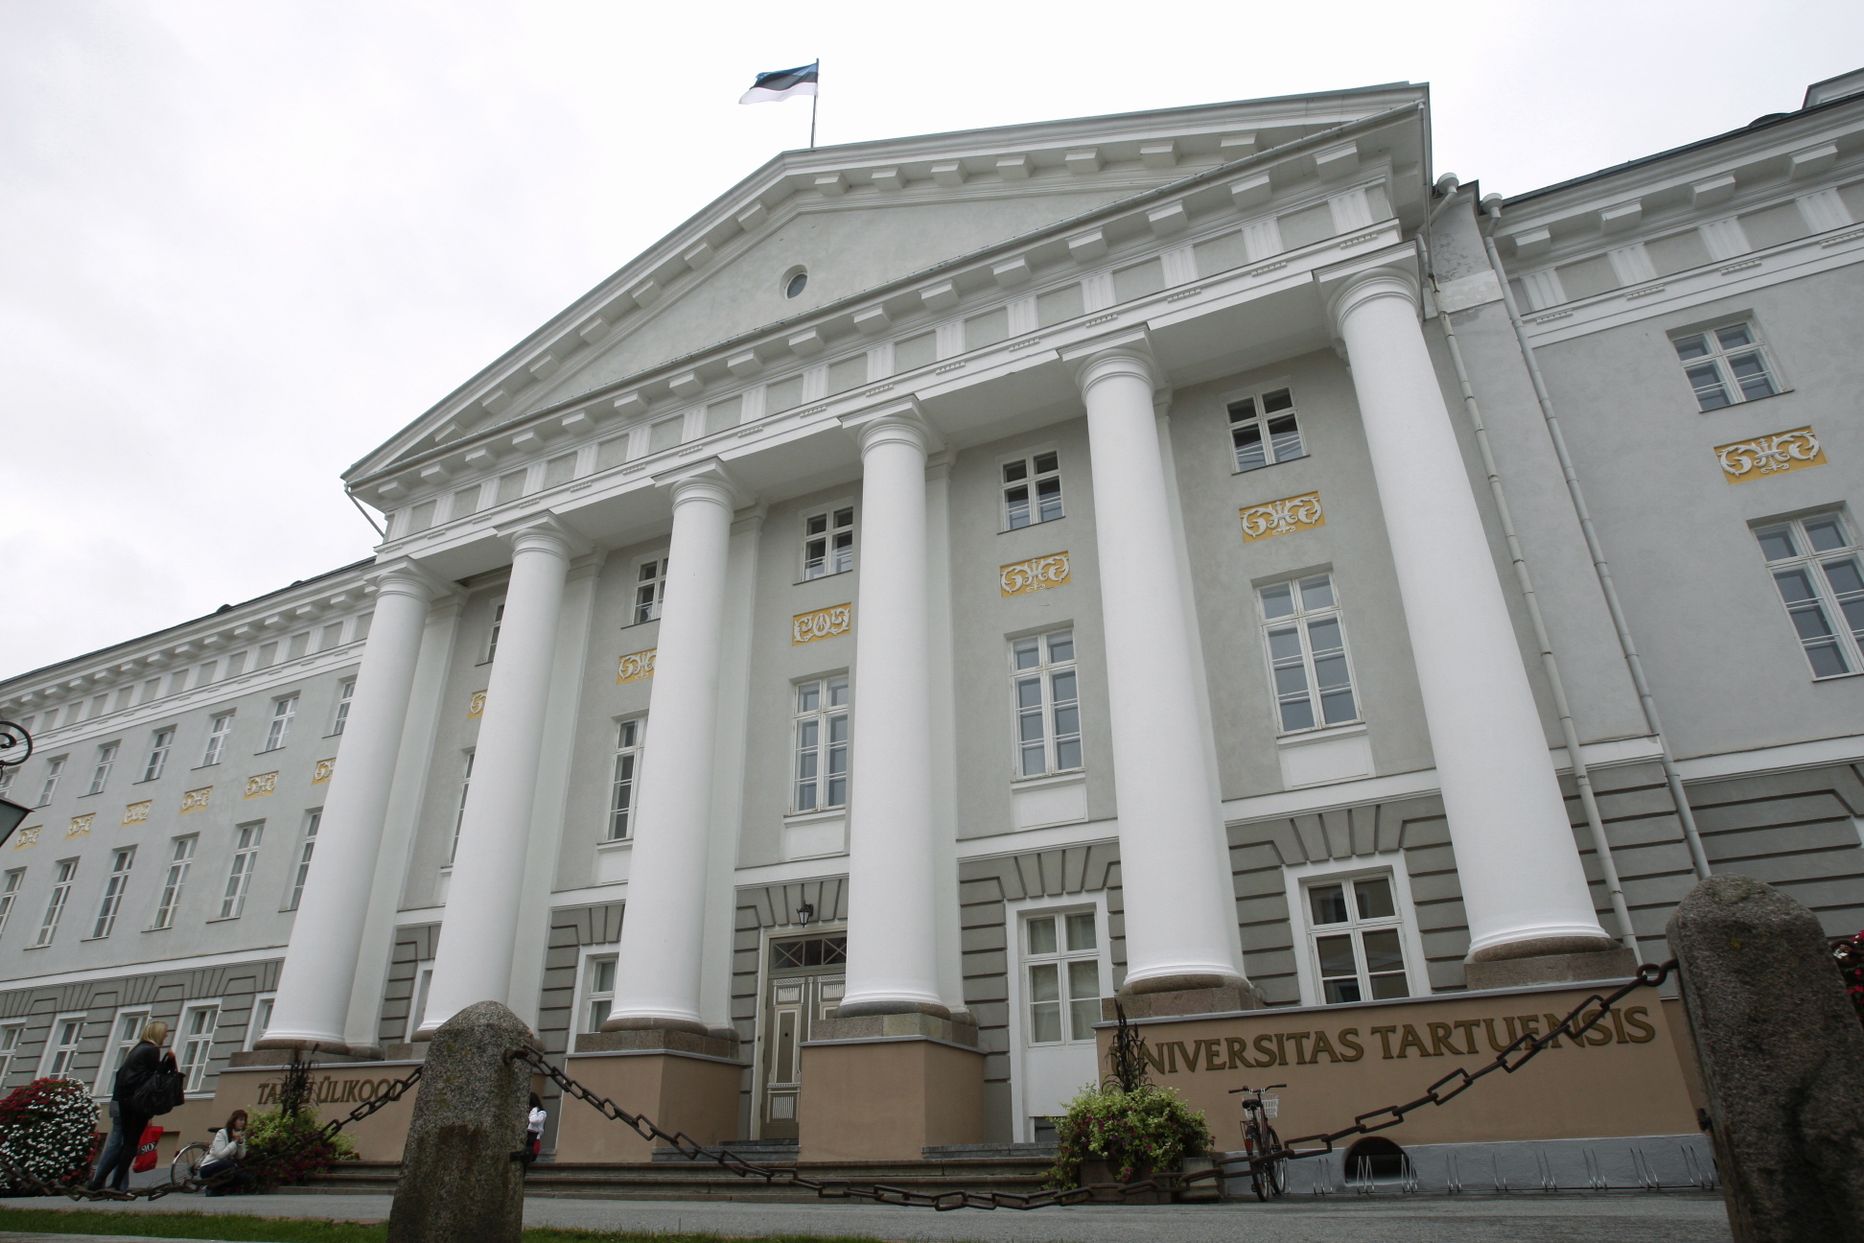 Eestis tuntakse Rootsi kuningat hariduselu edendajana ning eelkõige Tartu Ülikooli asutajana.